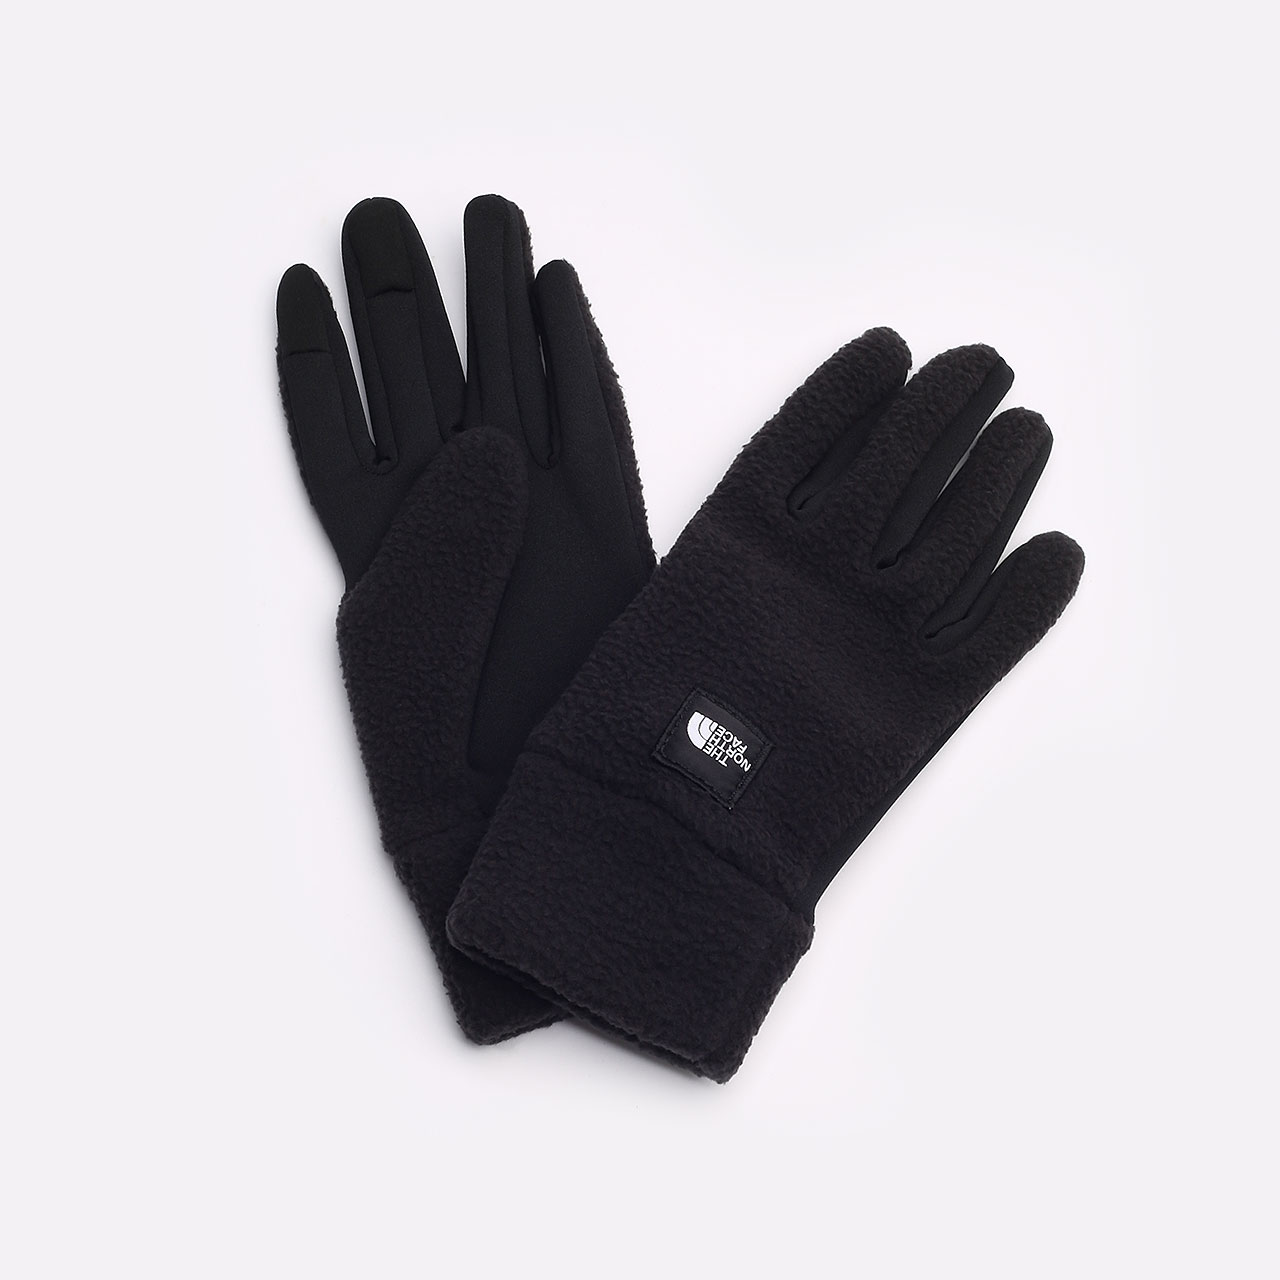  черные перчатки The North Face Fleeski Etip Glove TA3SJ4JK3 - цена, описание, фото 1